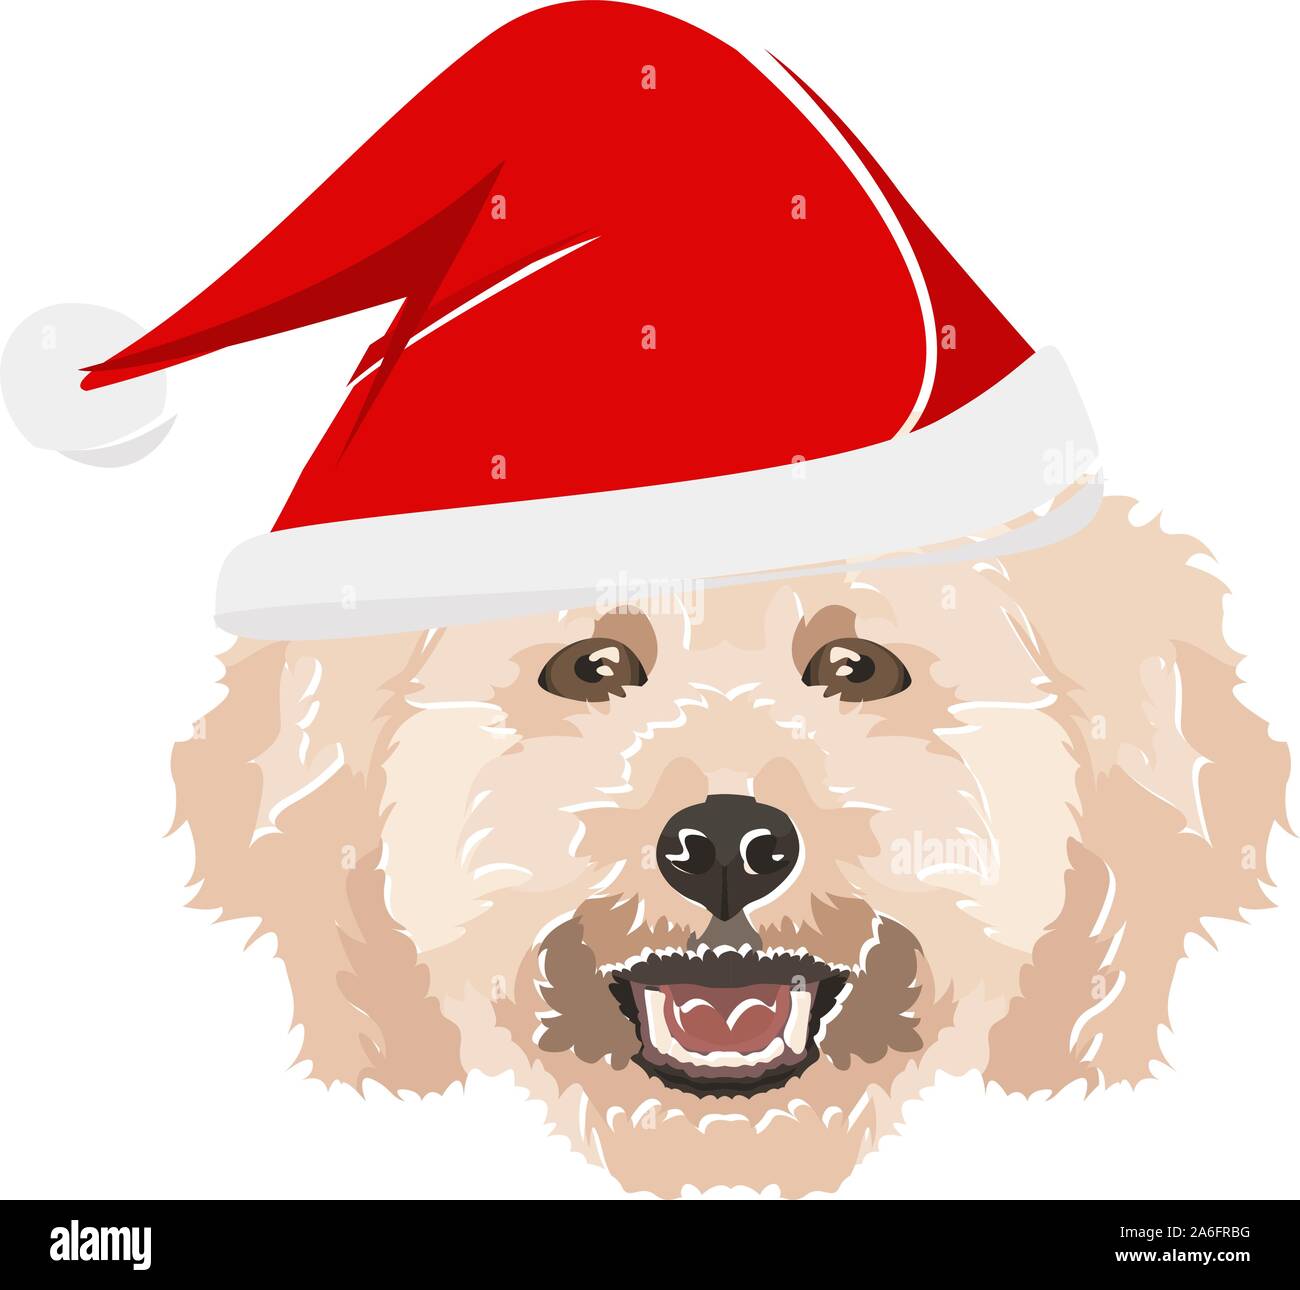 Pudel mit Weihnachten hat - Dieses fröhliche Hund ist richtig Beschaulich durch seine Santa Hat. Ein weihnachtliches Motiv für Hundebesitzer. Stock Vektor